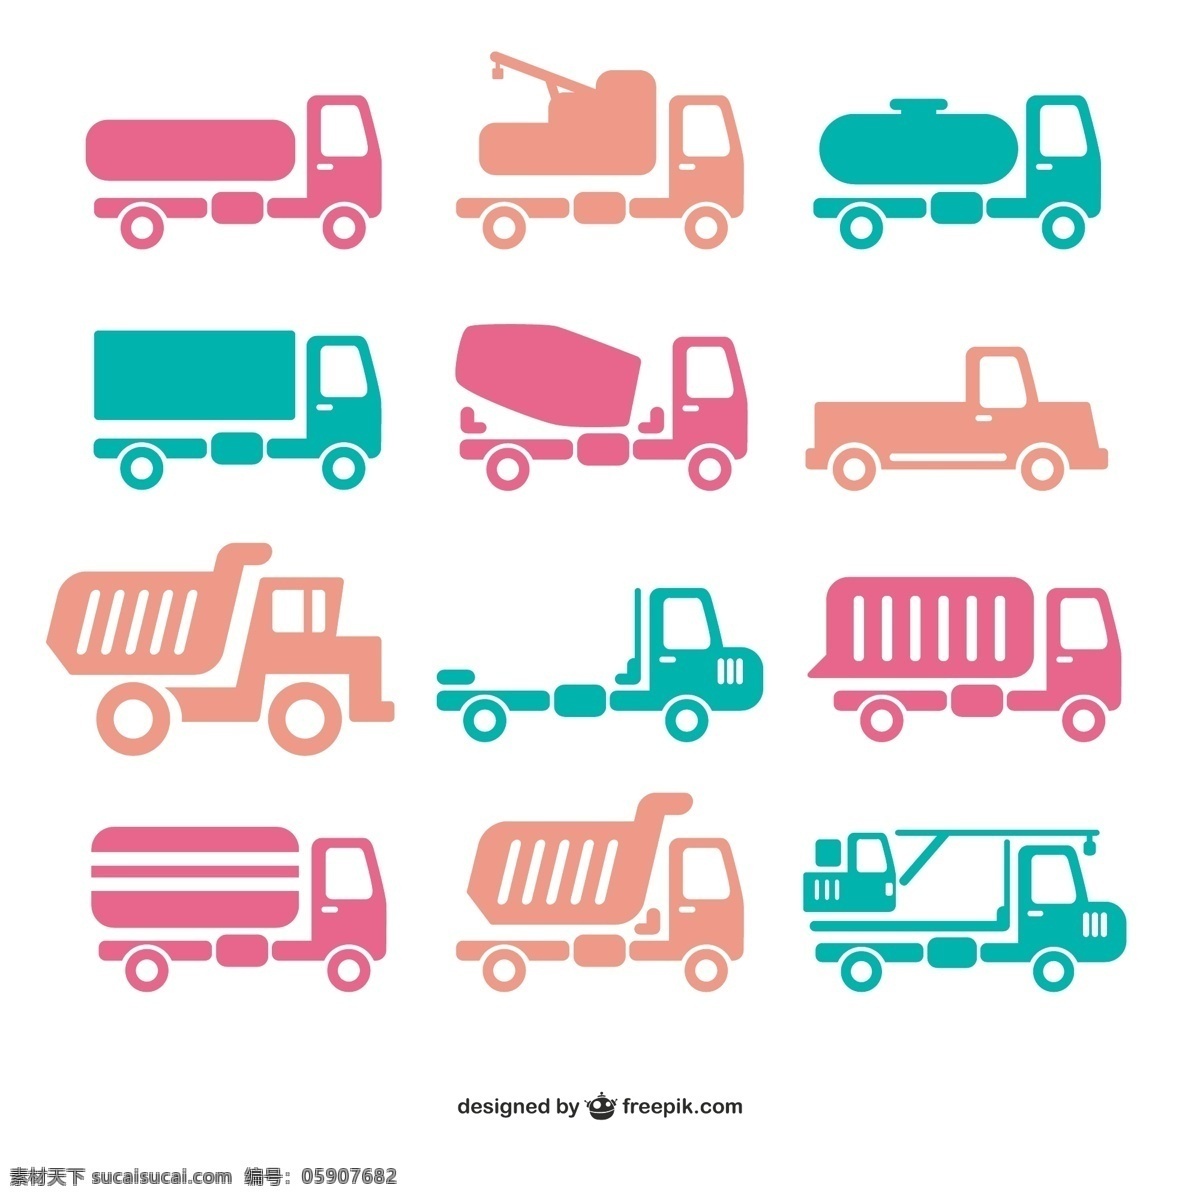 洗车 卡车 货车 图标 卡通汽车 汽车图标 起重车 矢量图 日常生活